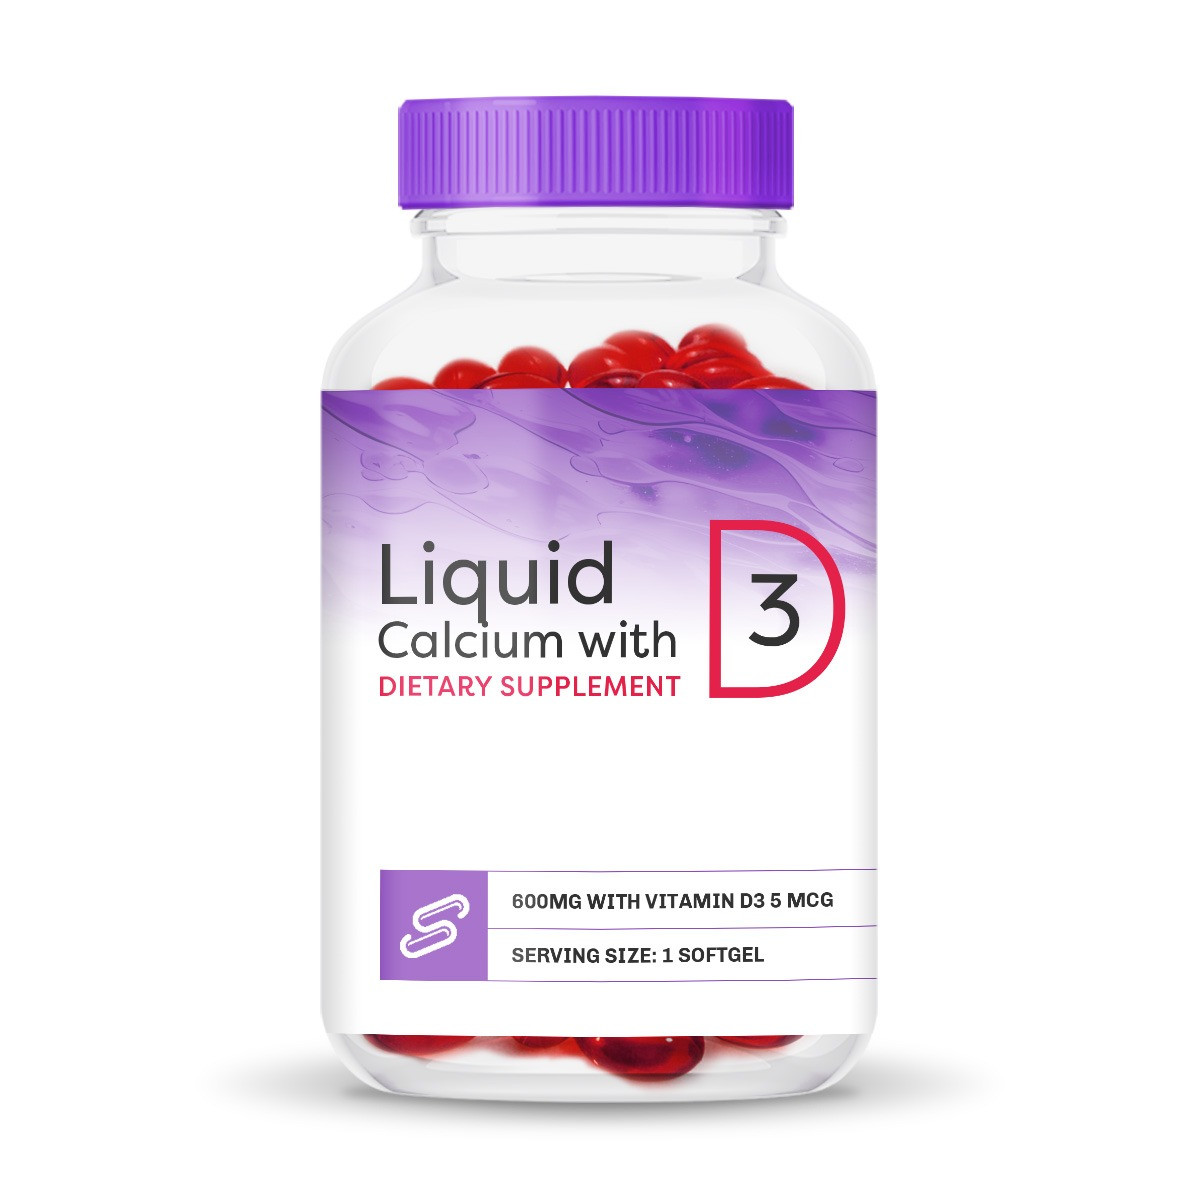 Liquid Calcium with Vitamin D3